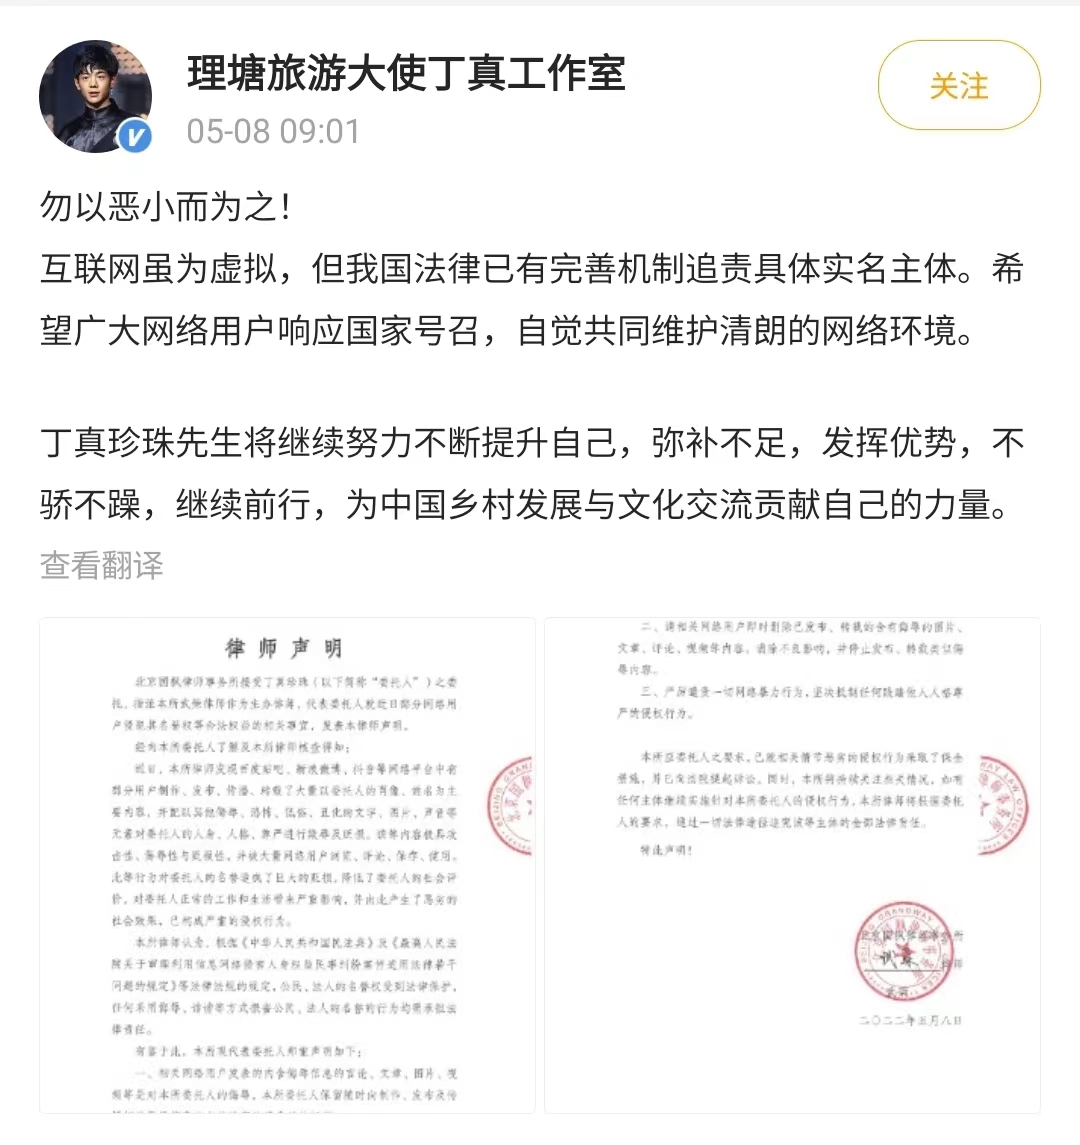 丁真工作室发布律师声明，称网友P图侵犯名誉权，将追究法律责任